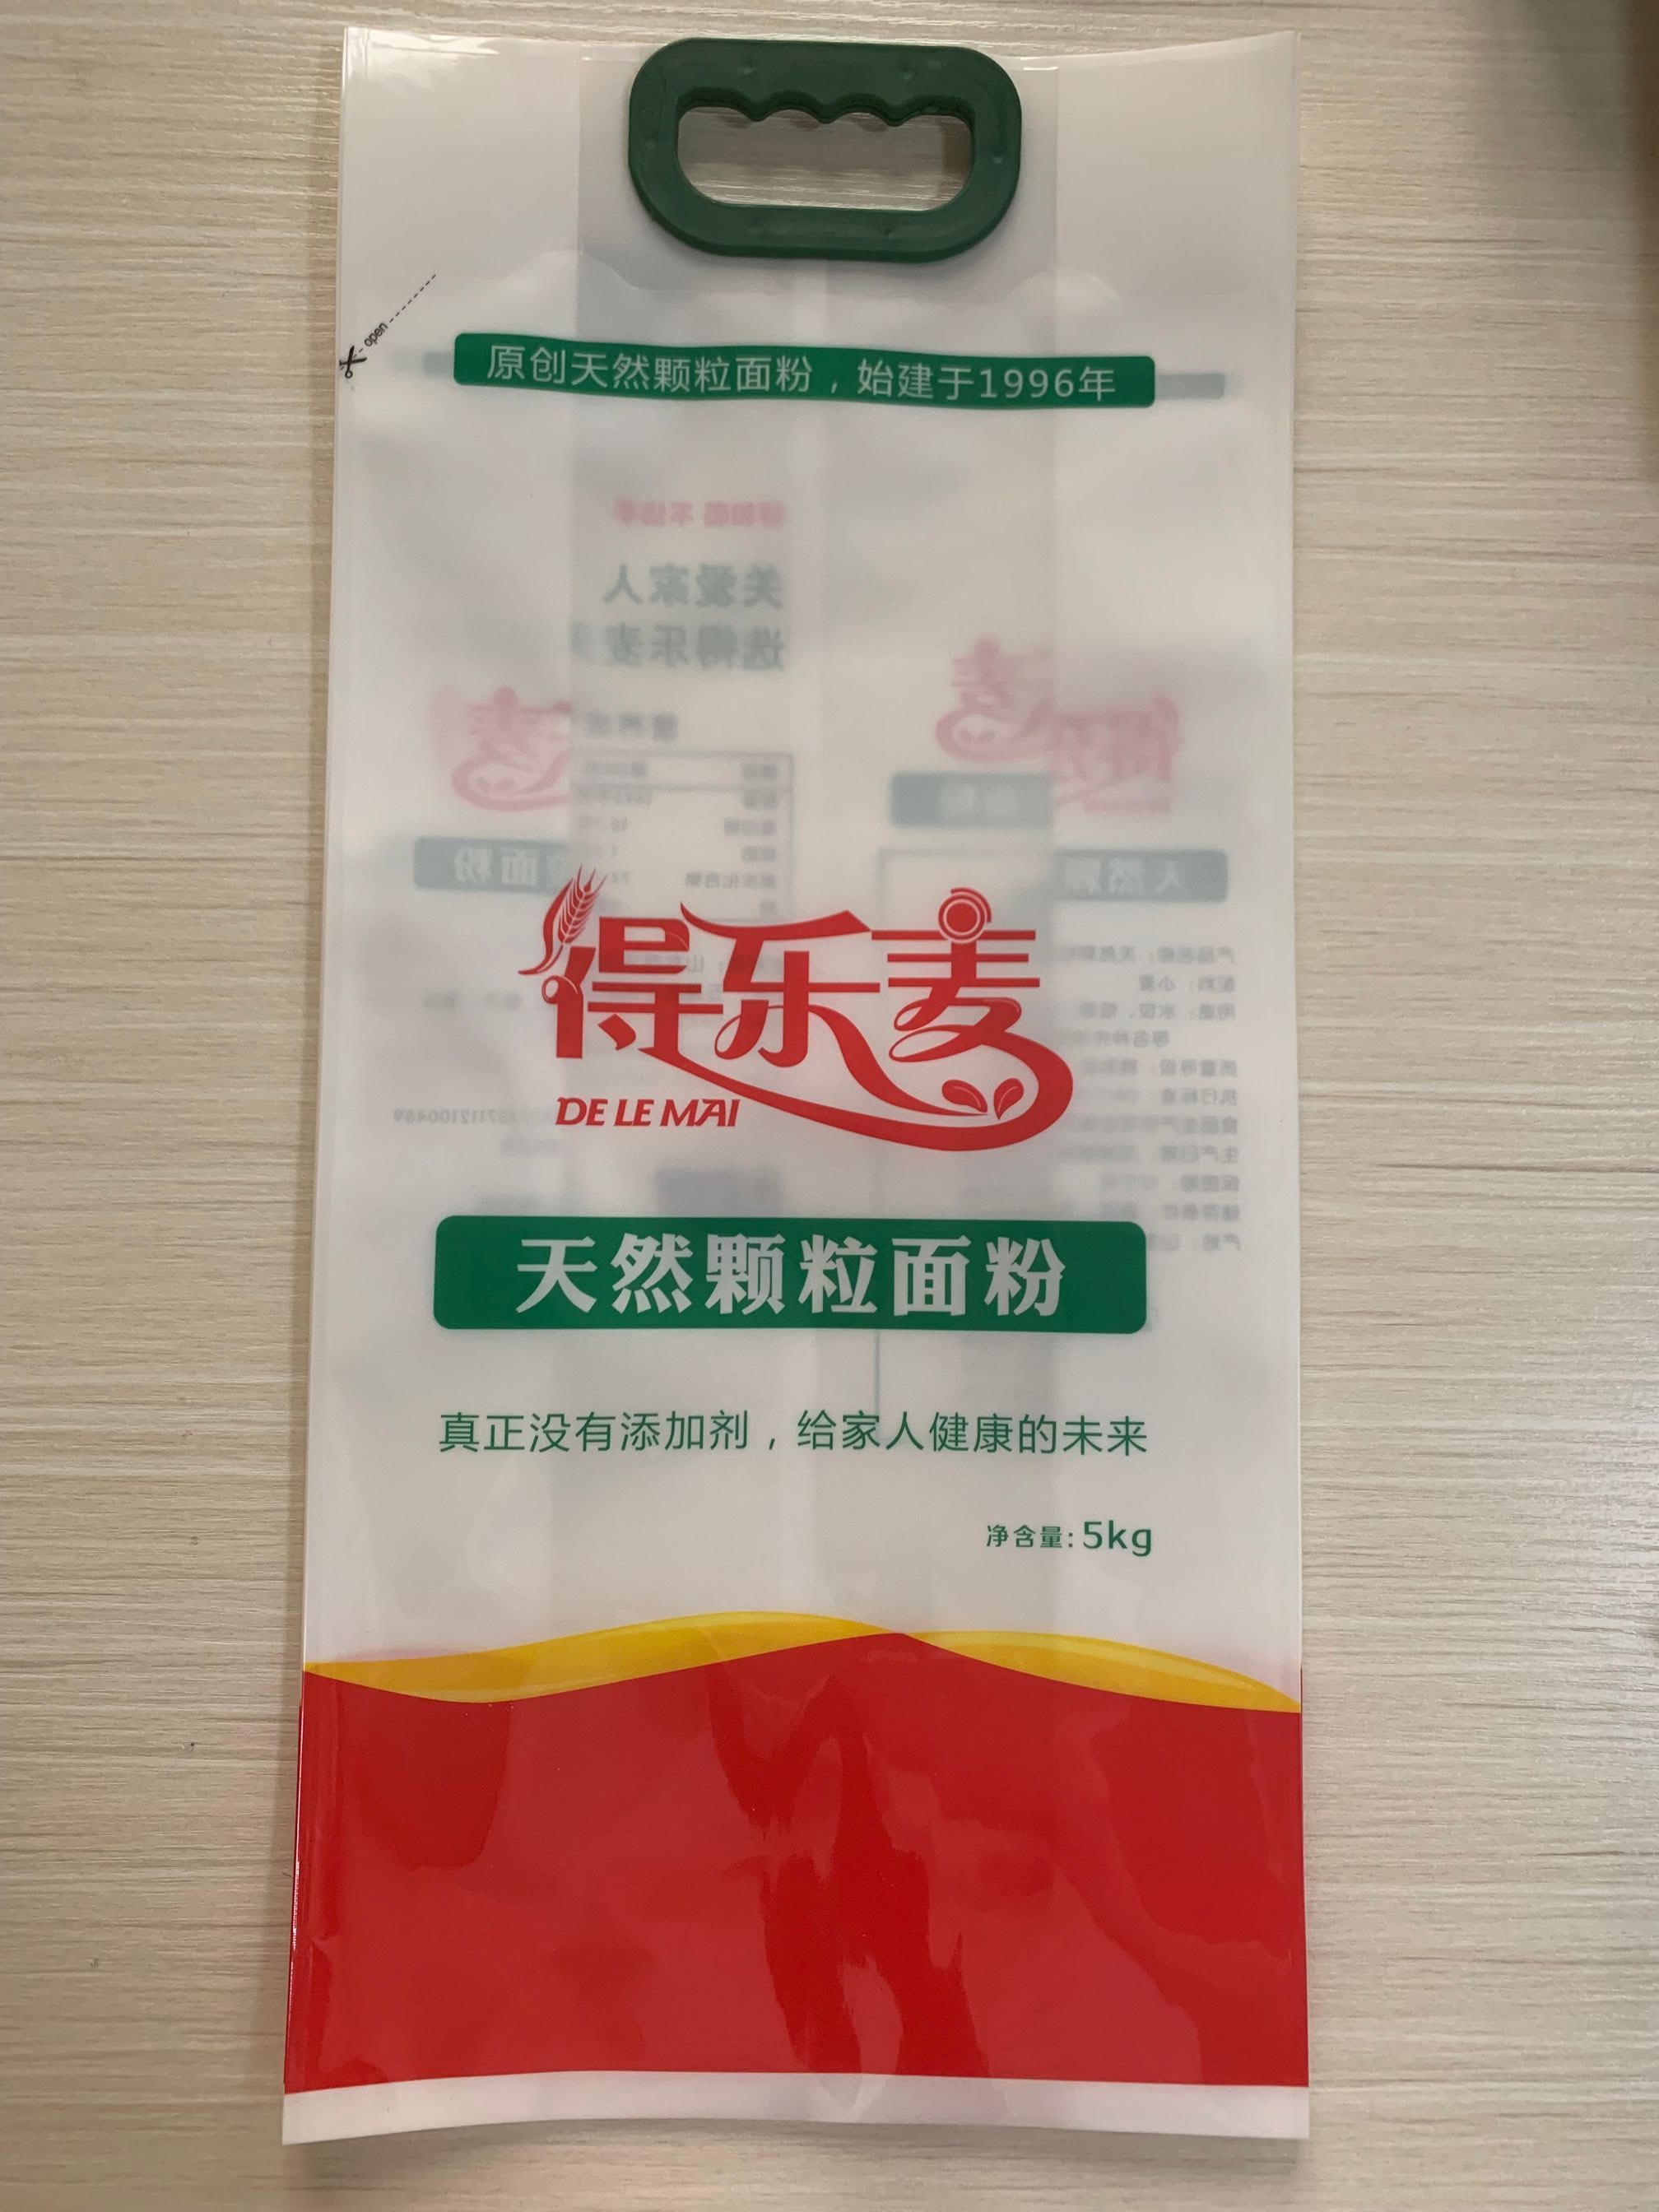 北京石磨面粉包装袋/小麦粉包装袋/莜面粉包装袋,定制生产